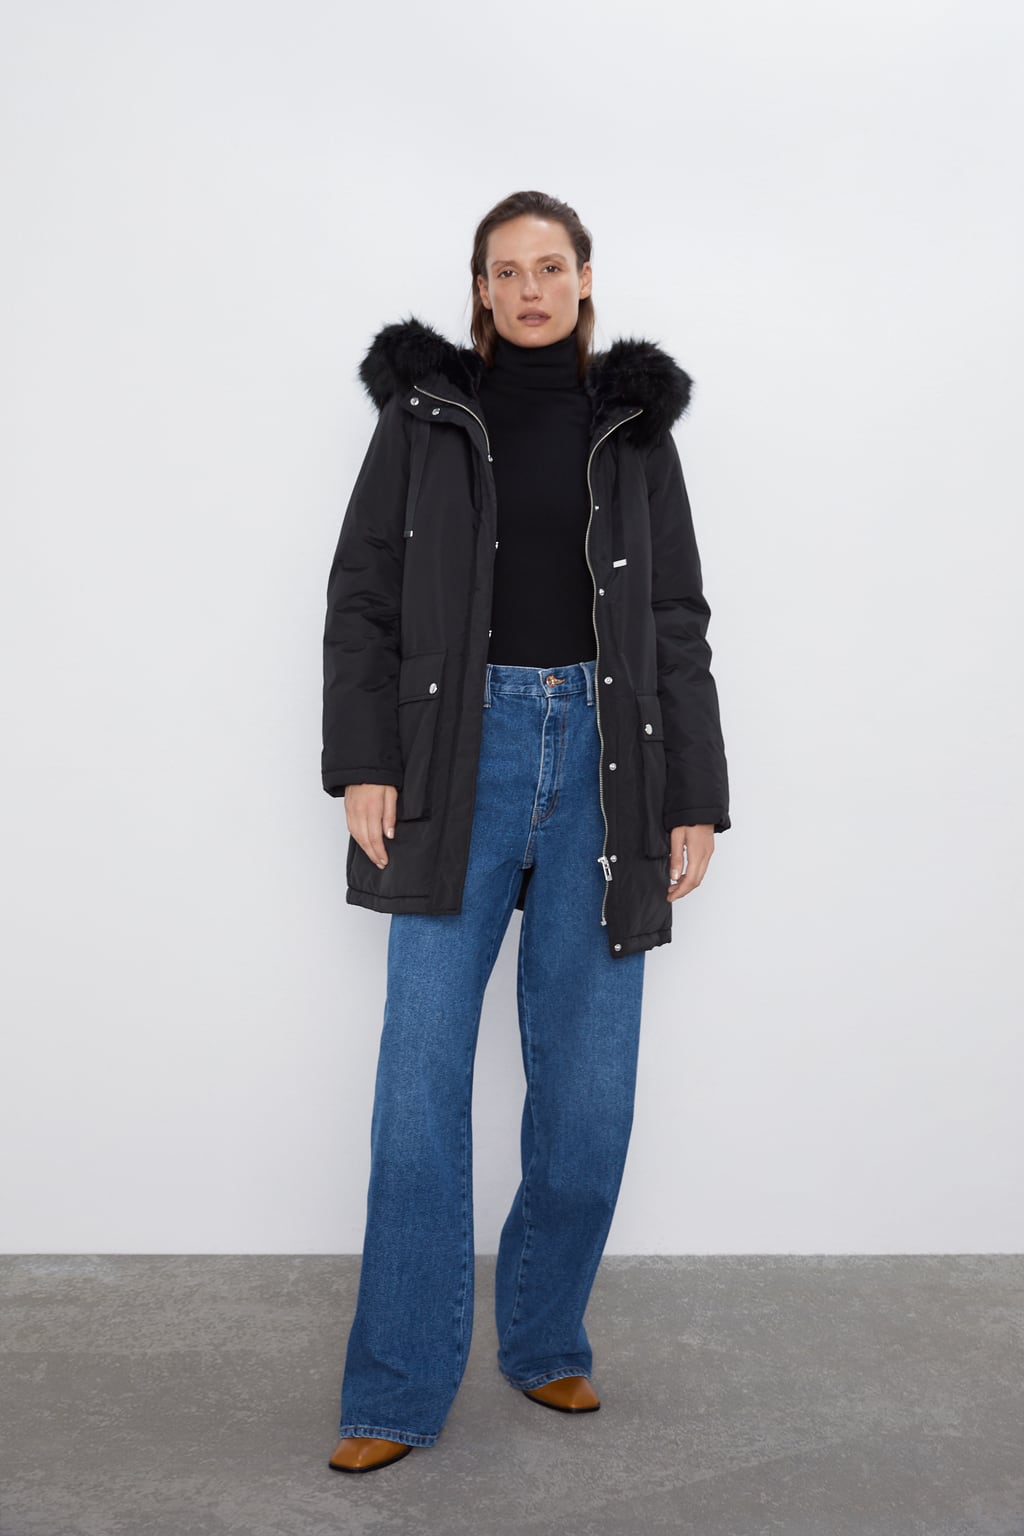 Rebajas Zara enero: abrigos, anoraks chaquetas el -30% - Modalia.es